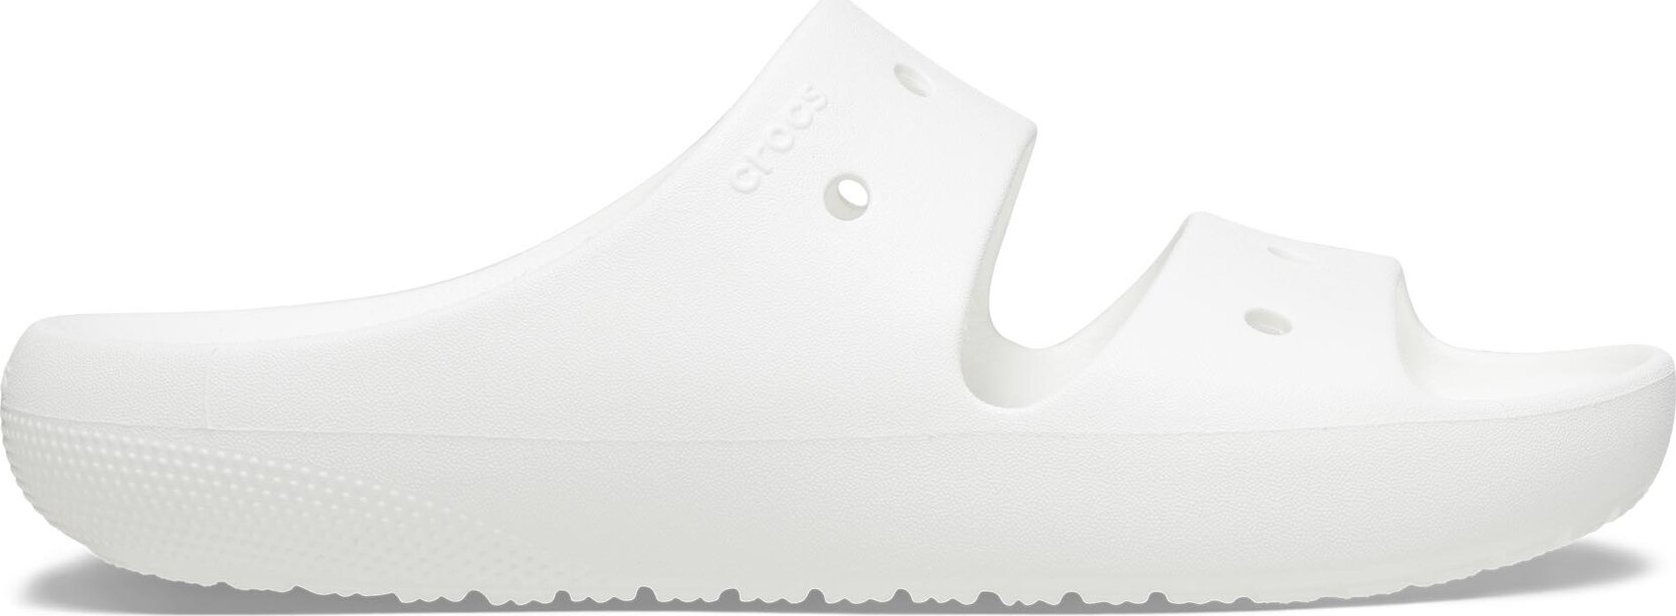 Nazouváky Crocs Classic Sandal V 209403 White 100